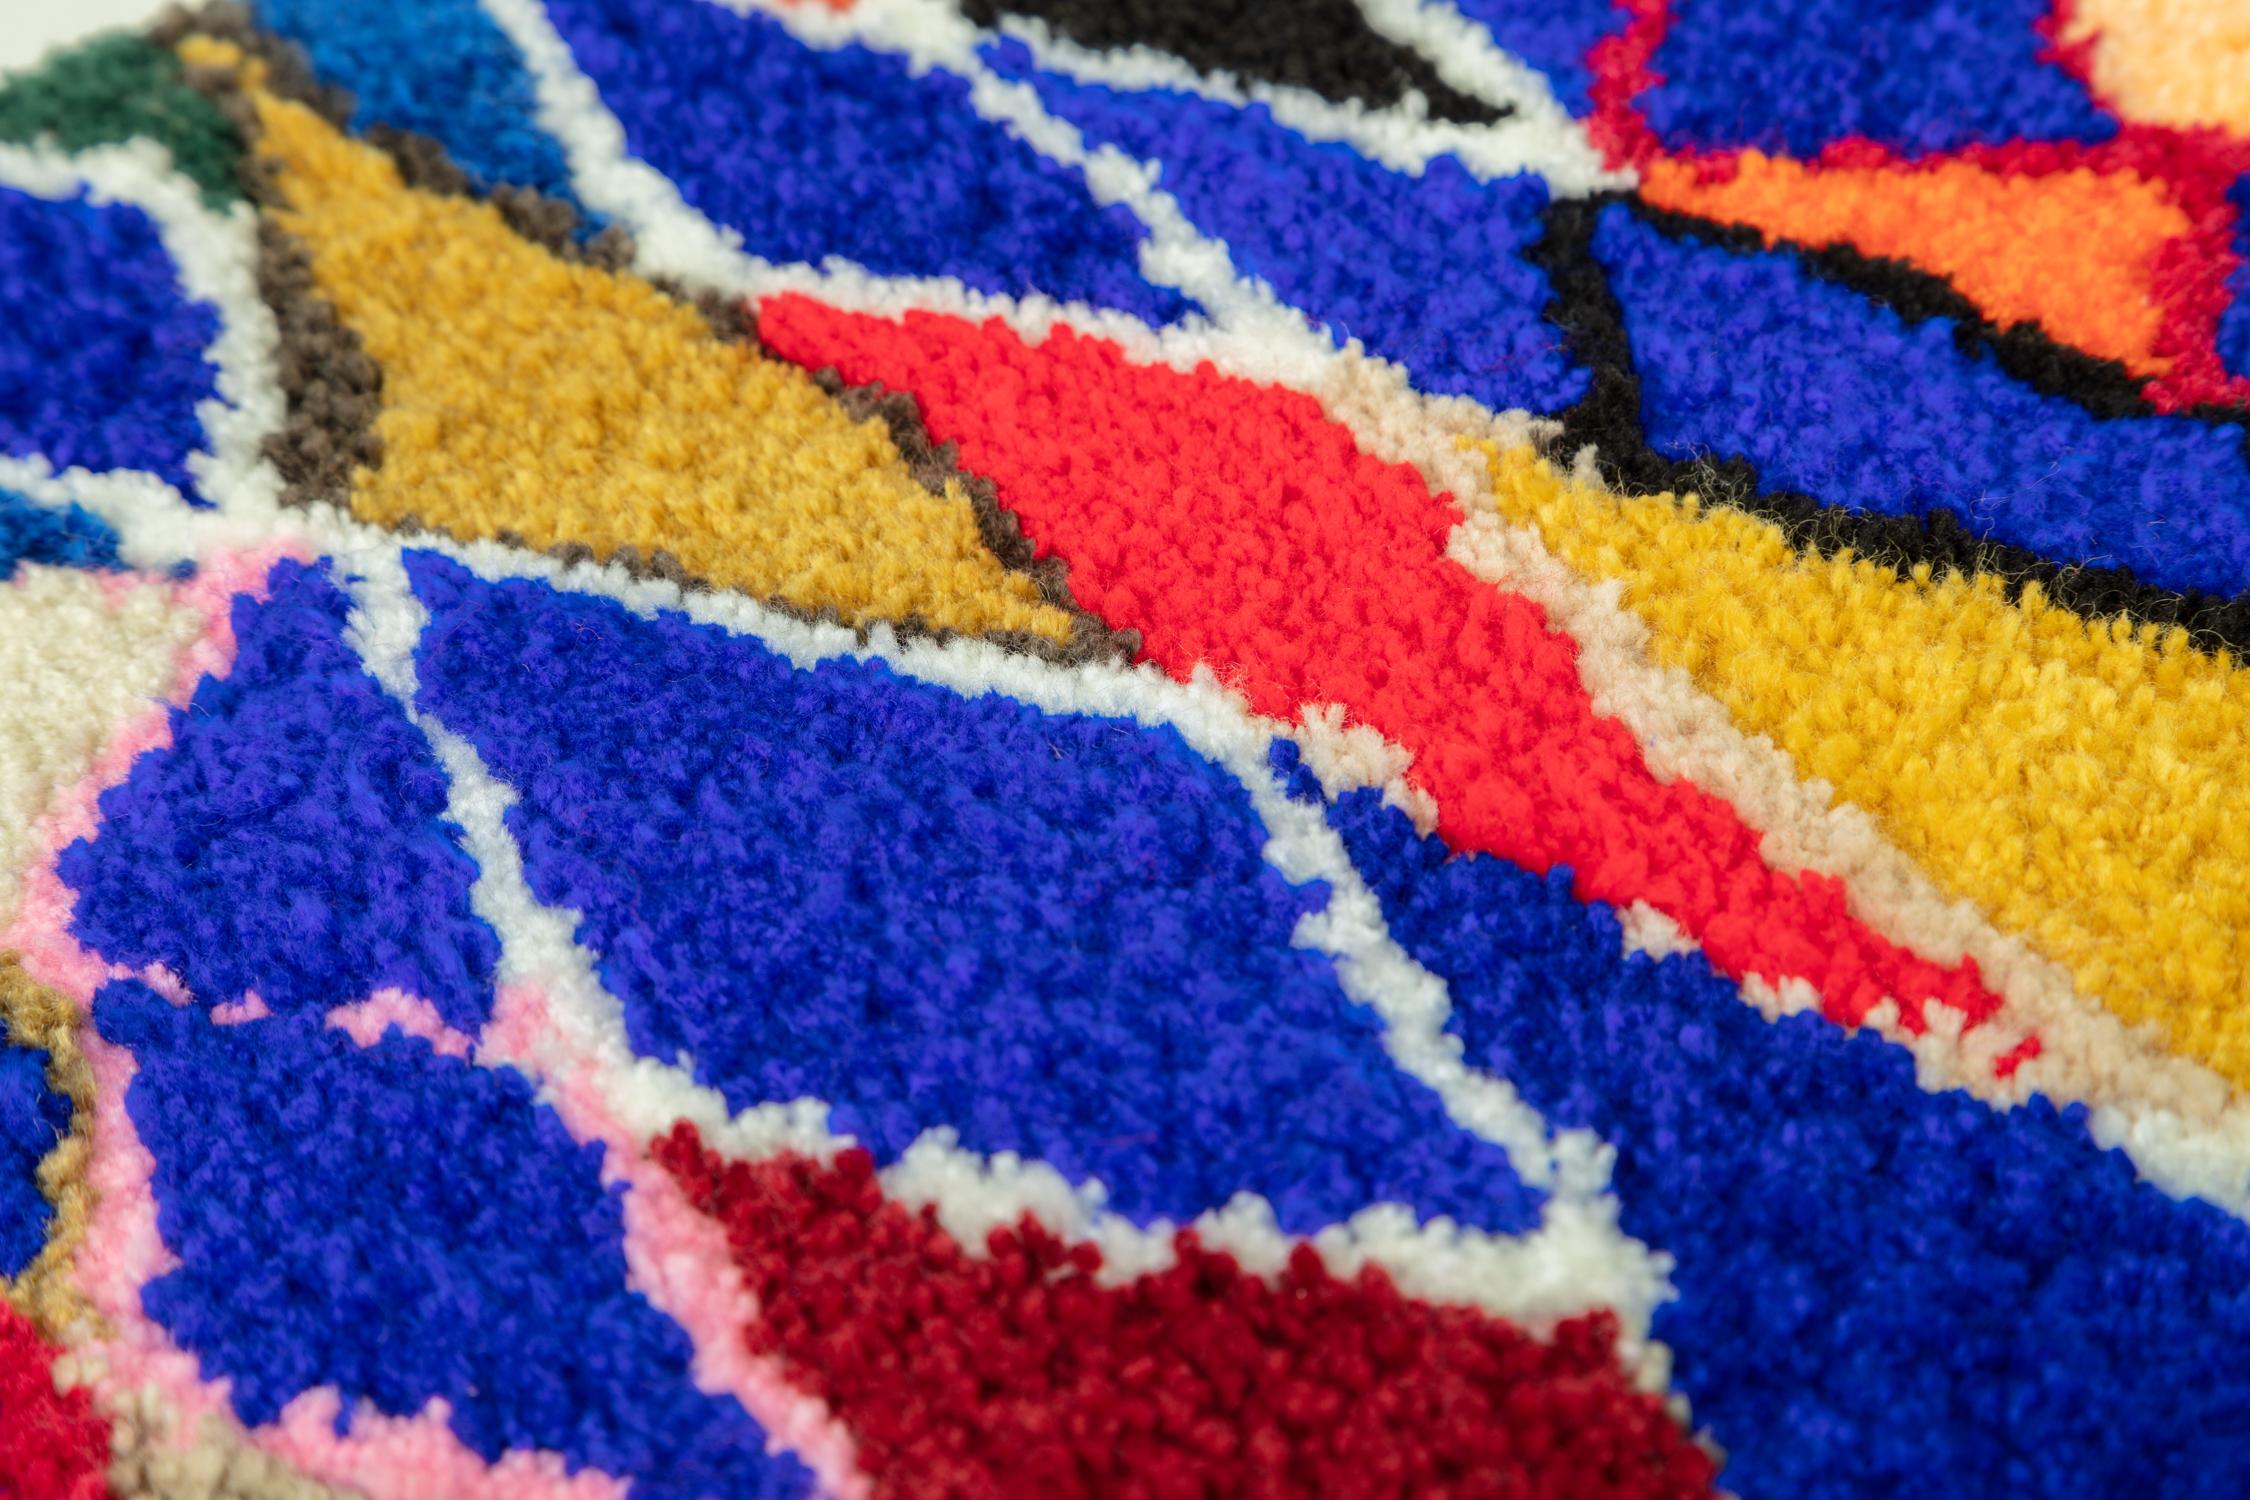 Handgetufteter Shag-Teppich von Madeline Tavernier

2022

Materialien: Acryl- und Wollgarne

Abmessungen: 19